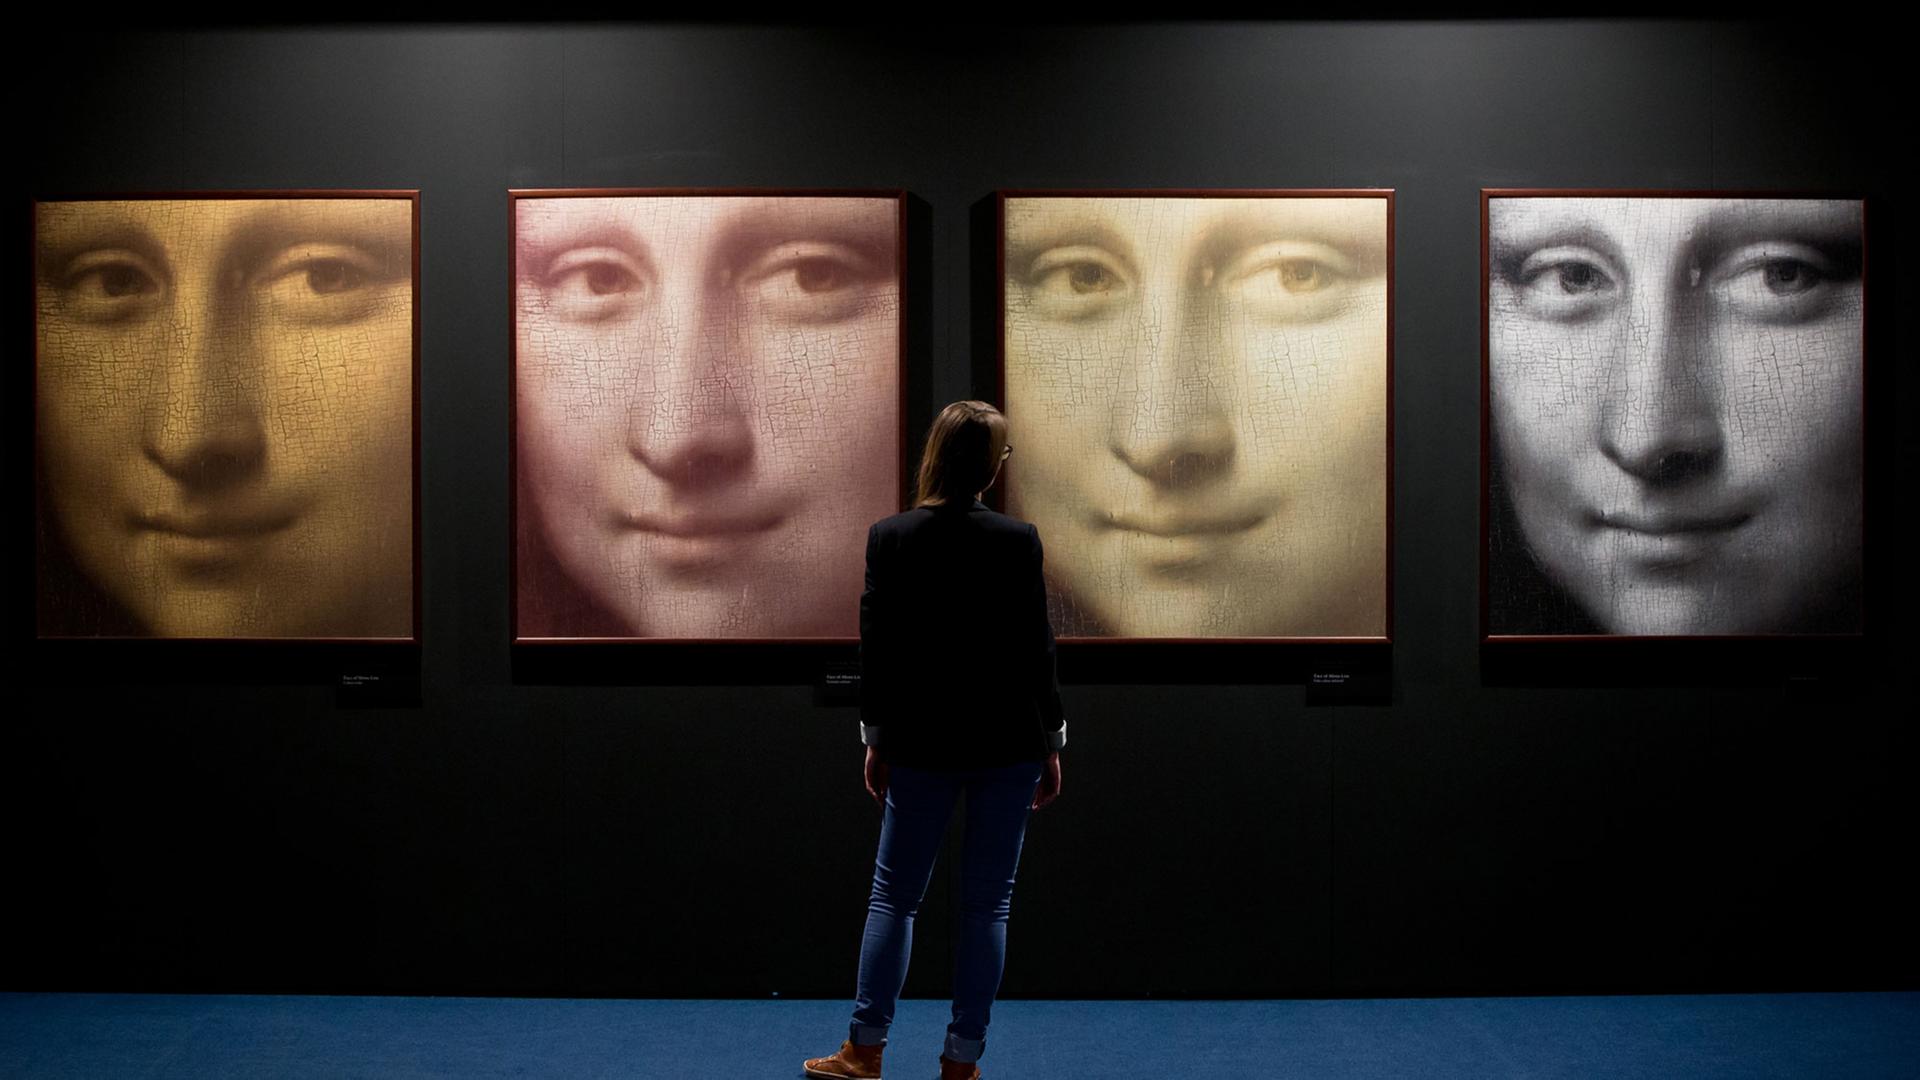 Vier Detailaufnahmen des Gesichts der Mona Lisa, aus dem gleichnamigen Gemälde von Leonardo da Vinci, in Infrarot, den ursprünglichen, heutigen und falschen Farben sind am 09.04.2014 in Nürnberg (Bayern) während der Ausstellung "Da Vinci - das Genie" zu sehen. Foto: Daniel Karmann/dpa